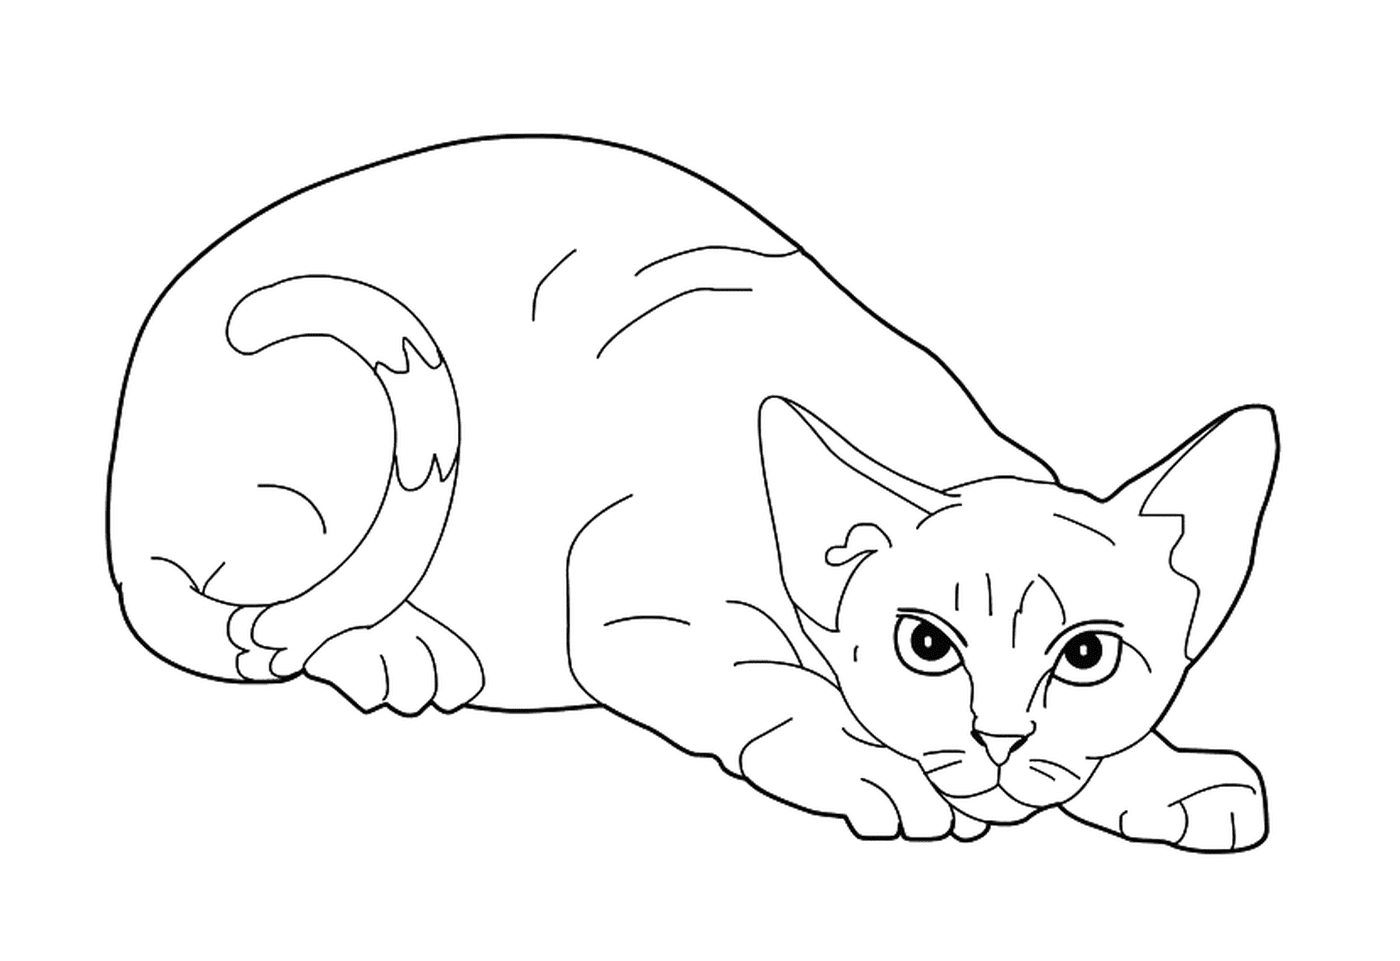  A Devon Rex, an elongated cat 